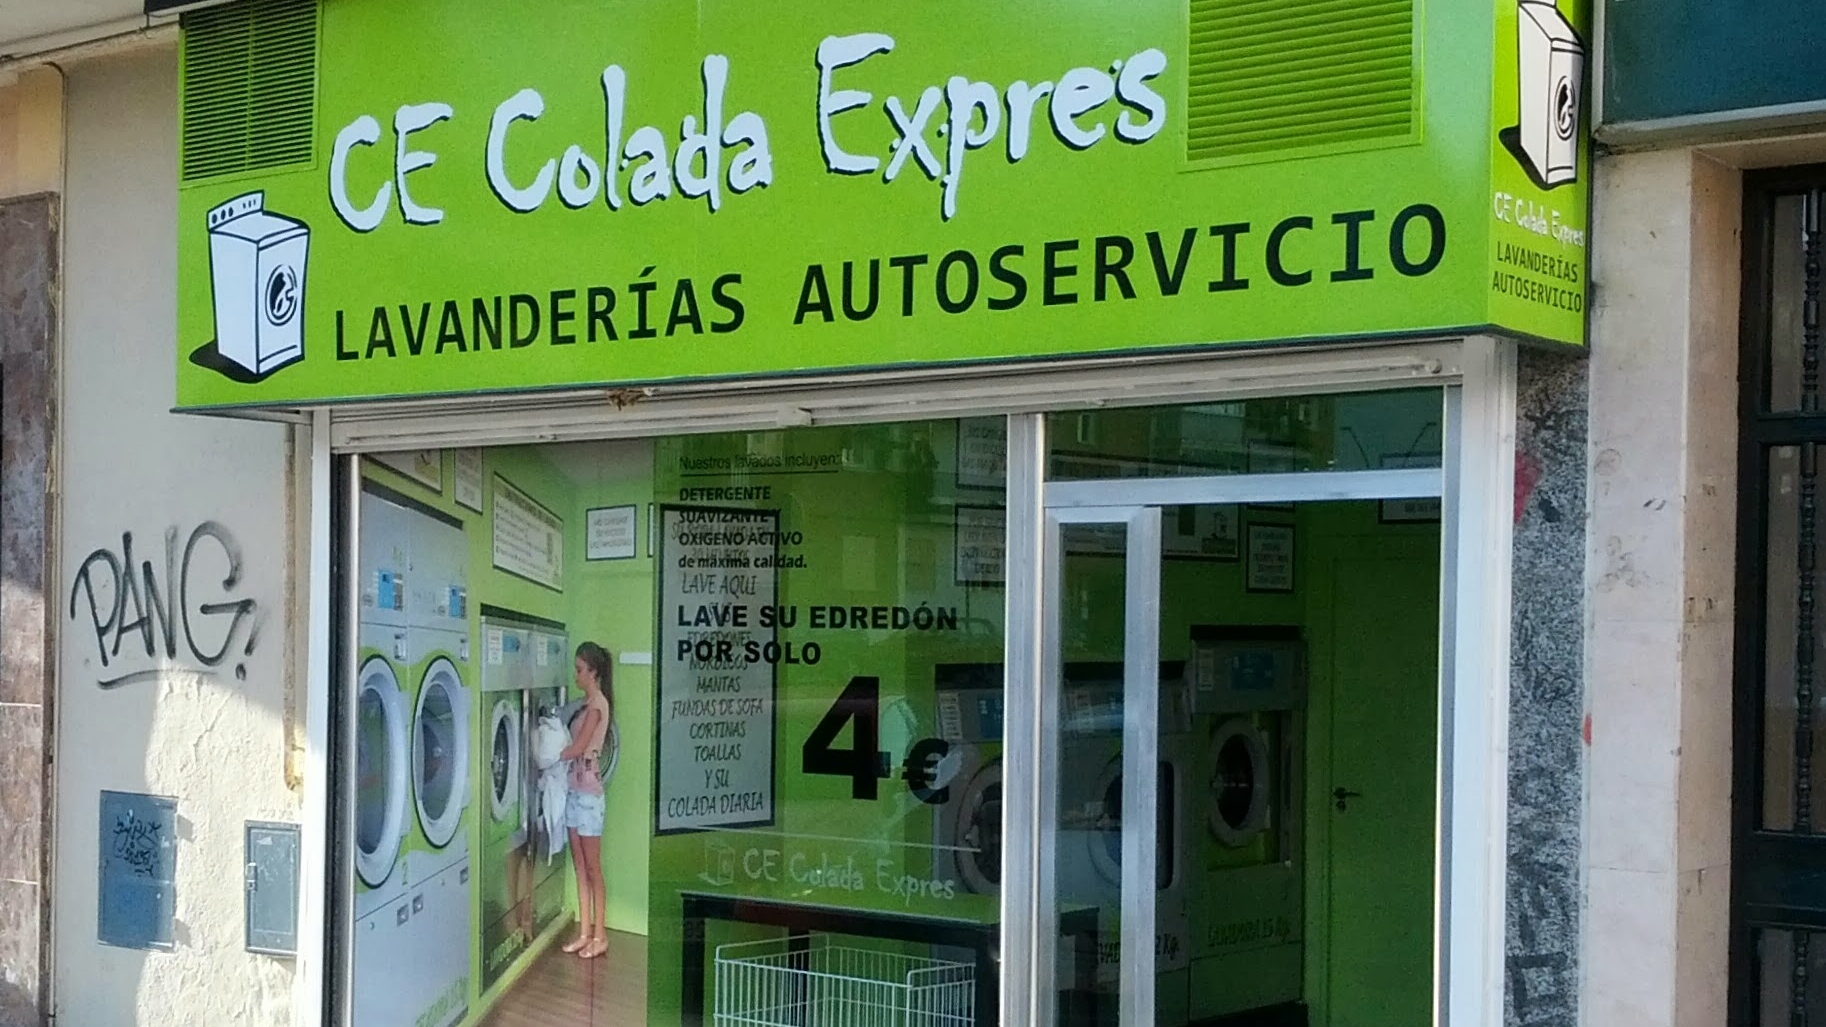 Lavandería Autoservicio Colada Exprés Alcorcón